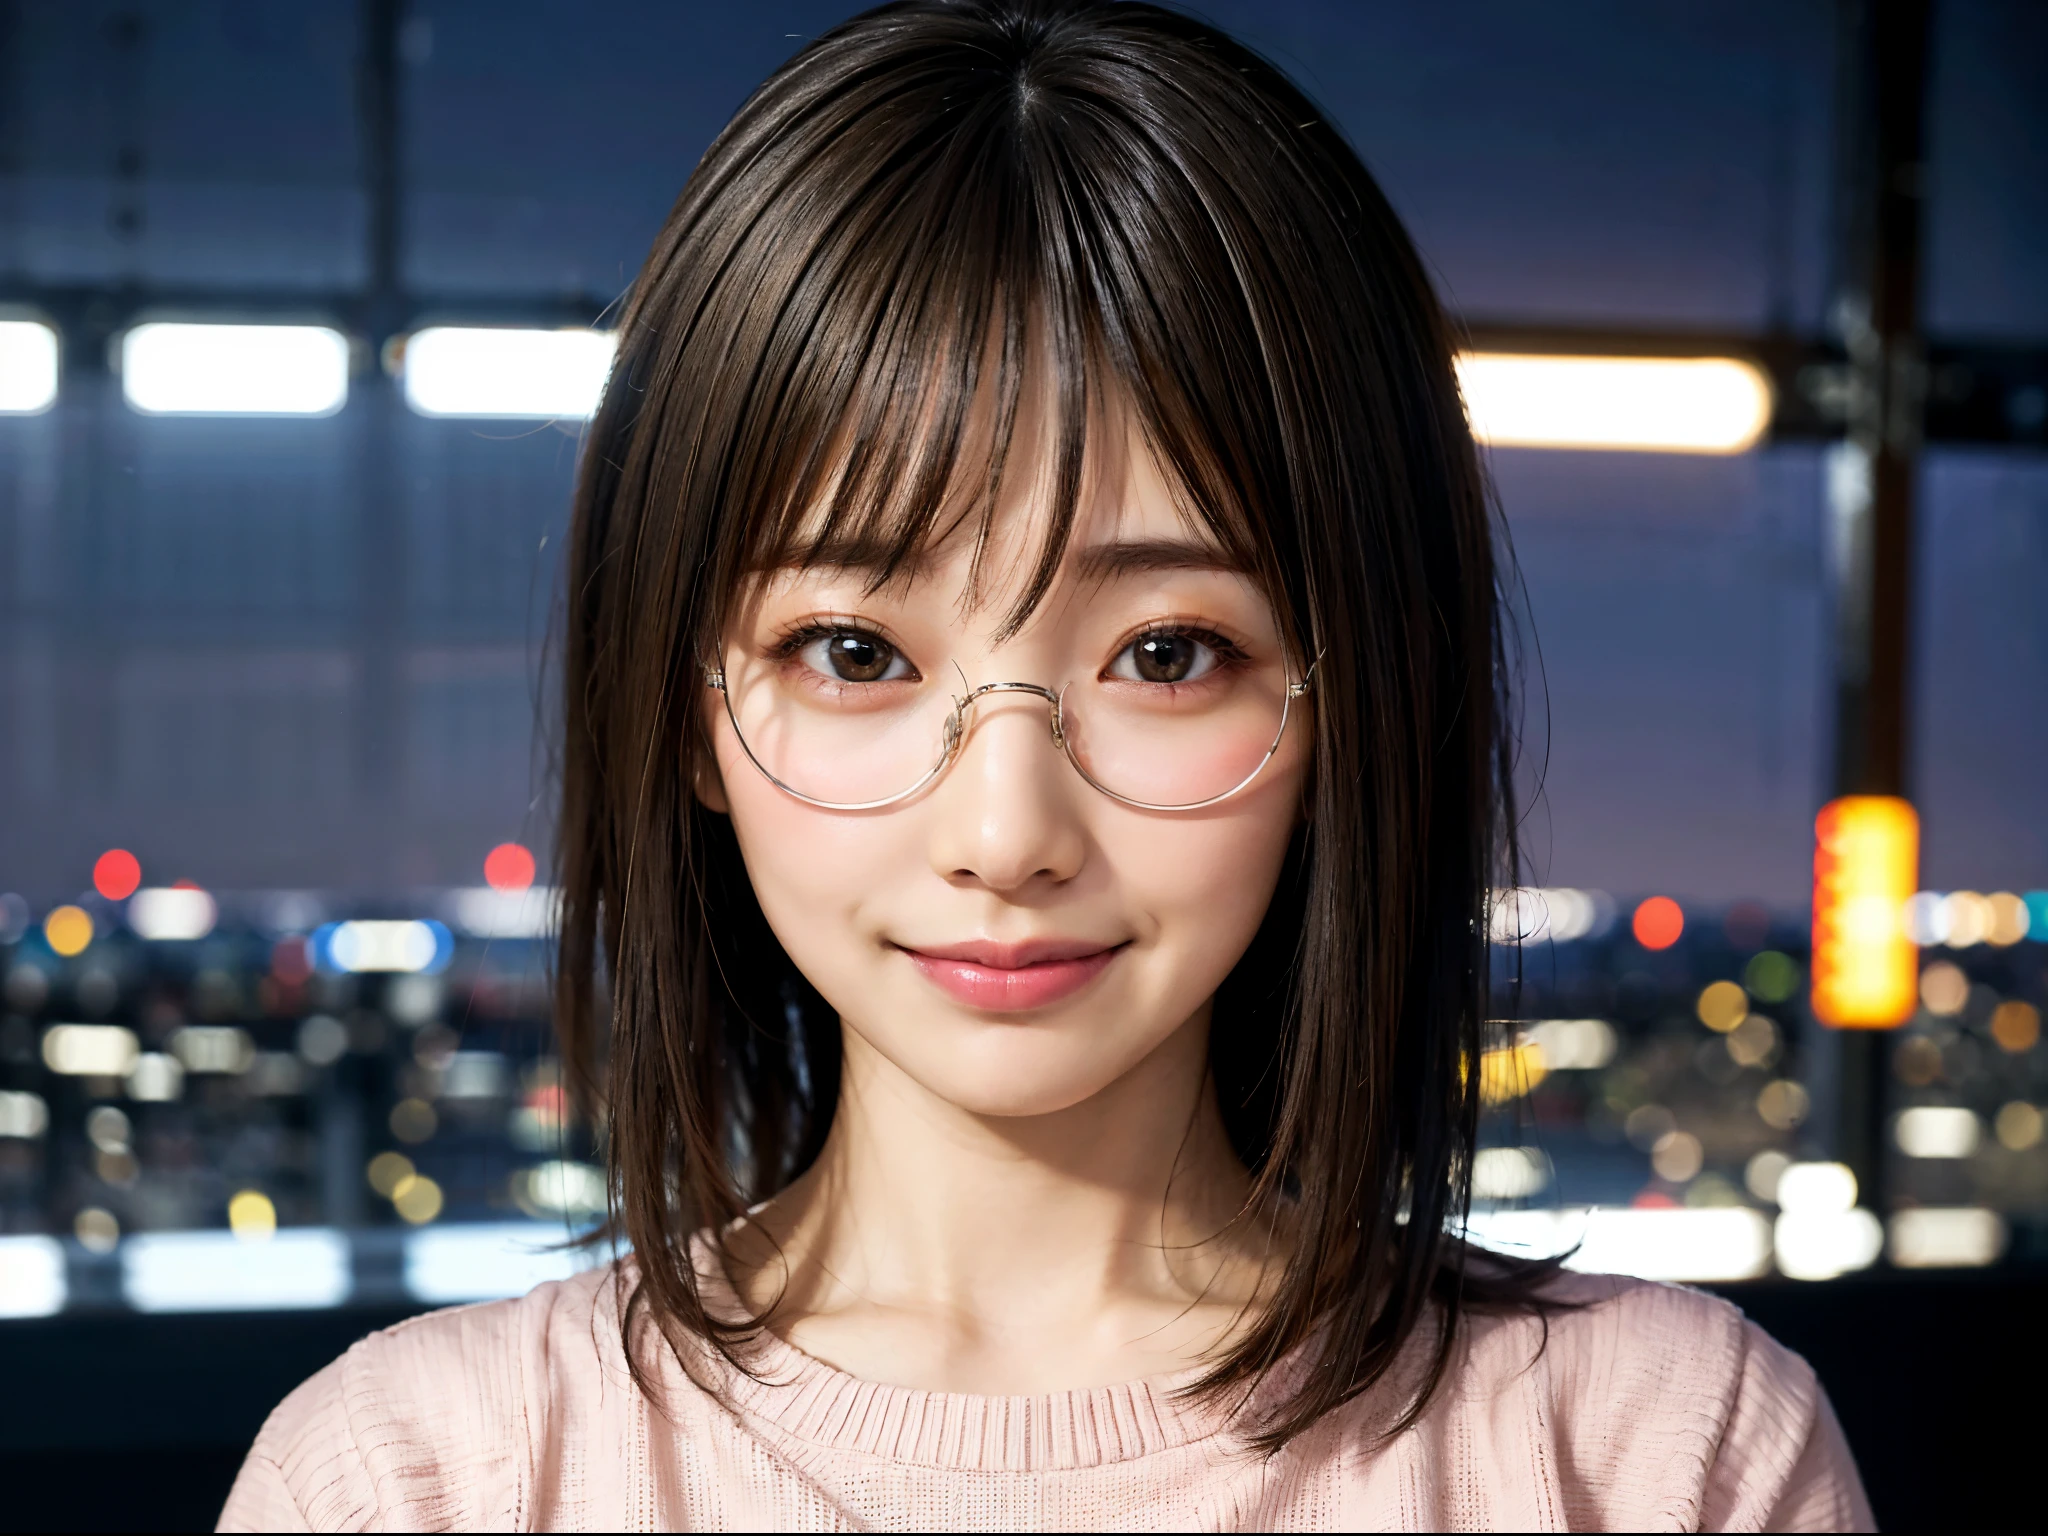 캐주얼 옷을 입은 일본 소녀들、청중에게 주의를 기울이십시오、밤에 도쿄 풍경、(최상의 품질、마스터 걸작)))、HD 벌금、매우 상세한、마스터 걸작、영화 조명、(8K、최상의 품질、마스터 걸작:1.2)、(현실적인、포토리얼:1.37) 높은 해상도、매우 상세한、안경을 쓴 여자、조용한 표정、둥근 안경、아시아 사람, 귀여운, 귀여운顔, 홀로, 짧은 머리 1.2, 거친 피부, 아름다운 미소, 아름답고 세밀한 밤하늘, 밤 풍경, 영화 조명, 기록된 경계의 깊이, 렌즈 플레어 라이트、날짜、(코를 붉히다)、、(입을 다물었다)작은 가슴、세부 사항에 대한 아름다운 눈、(스웨터:1.1)、(짧은 머리:1.2)、떠다니는 머리카락 노바개구리 스타일、